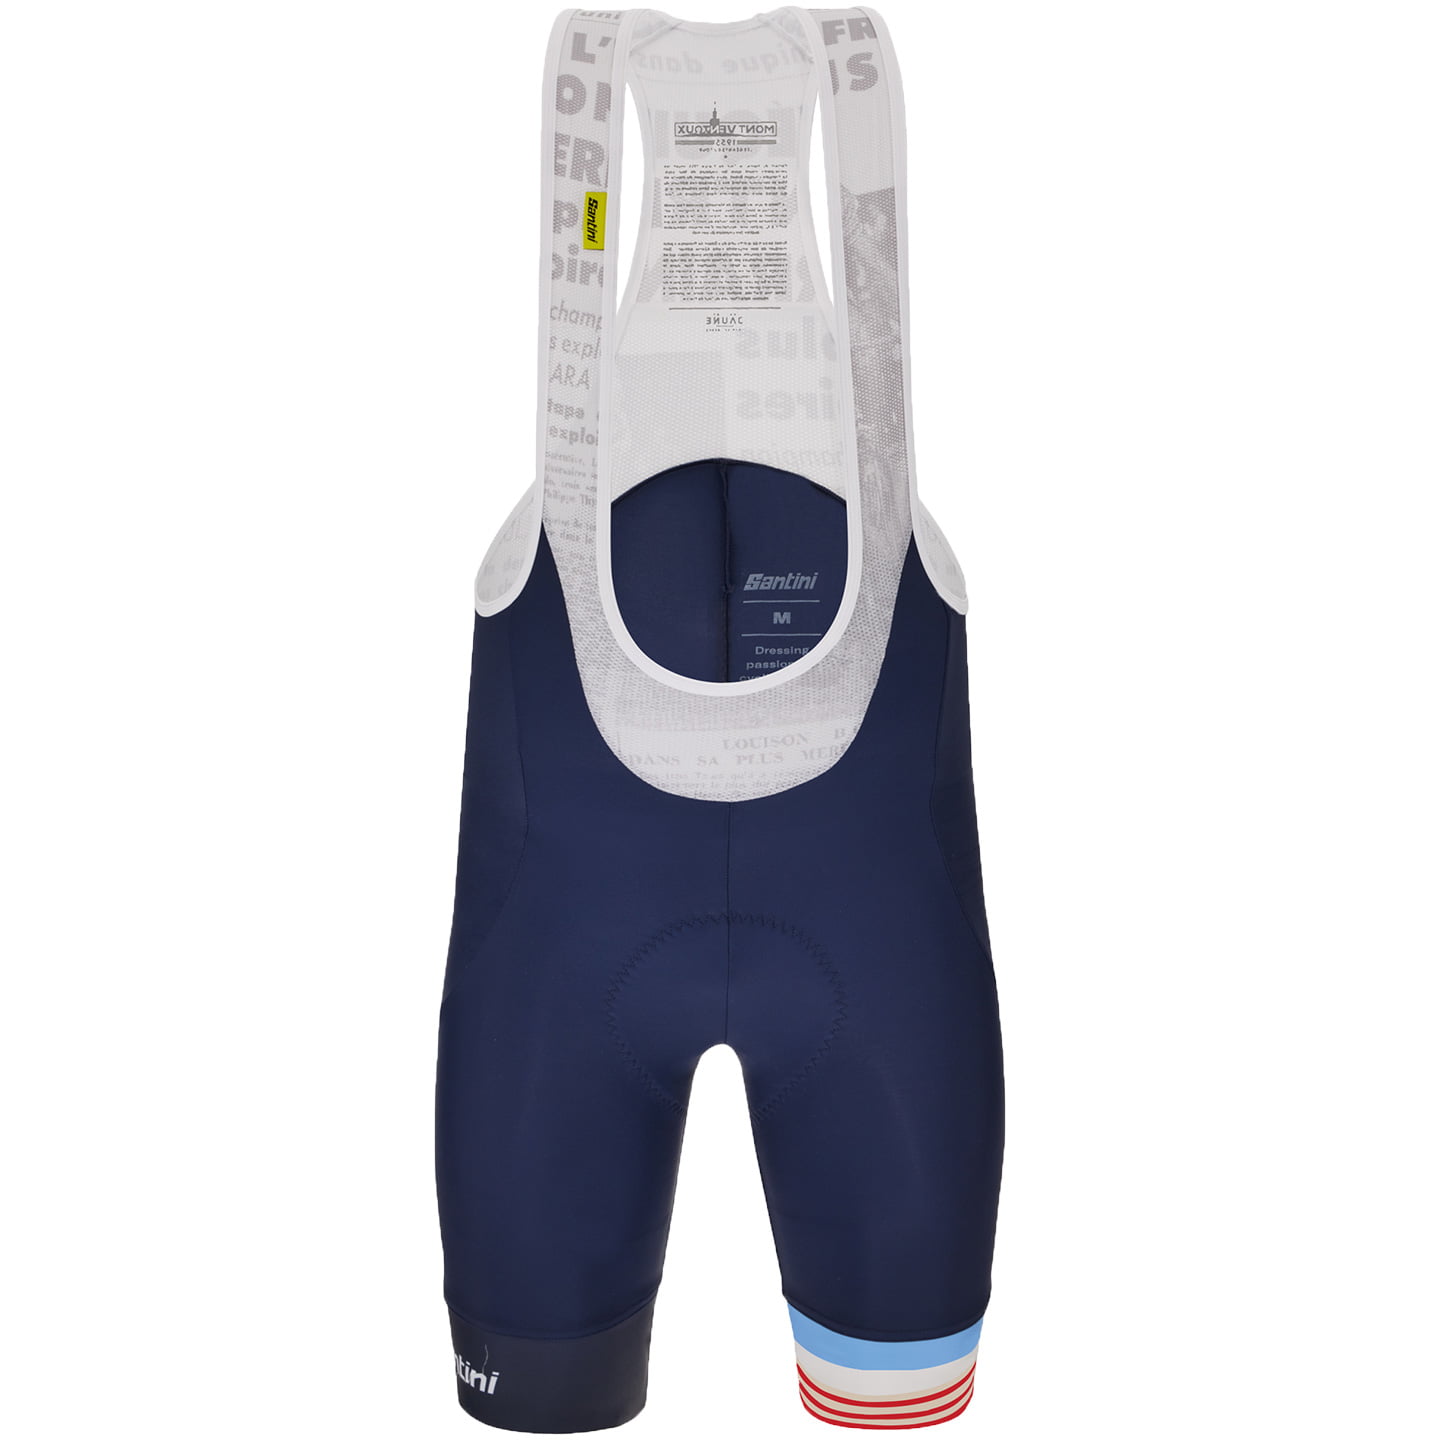 TOUR DE FRANCE Bib Shorts Le Maillot Jaune Mont Ventoux 2023, for men, size XL, Cycle trousers, Cycle clothing